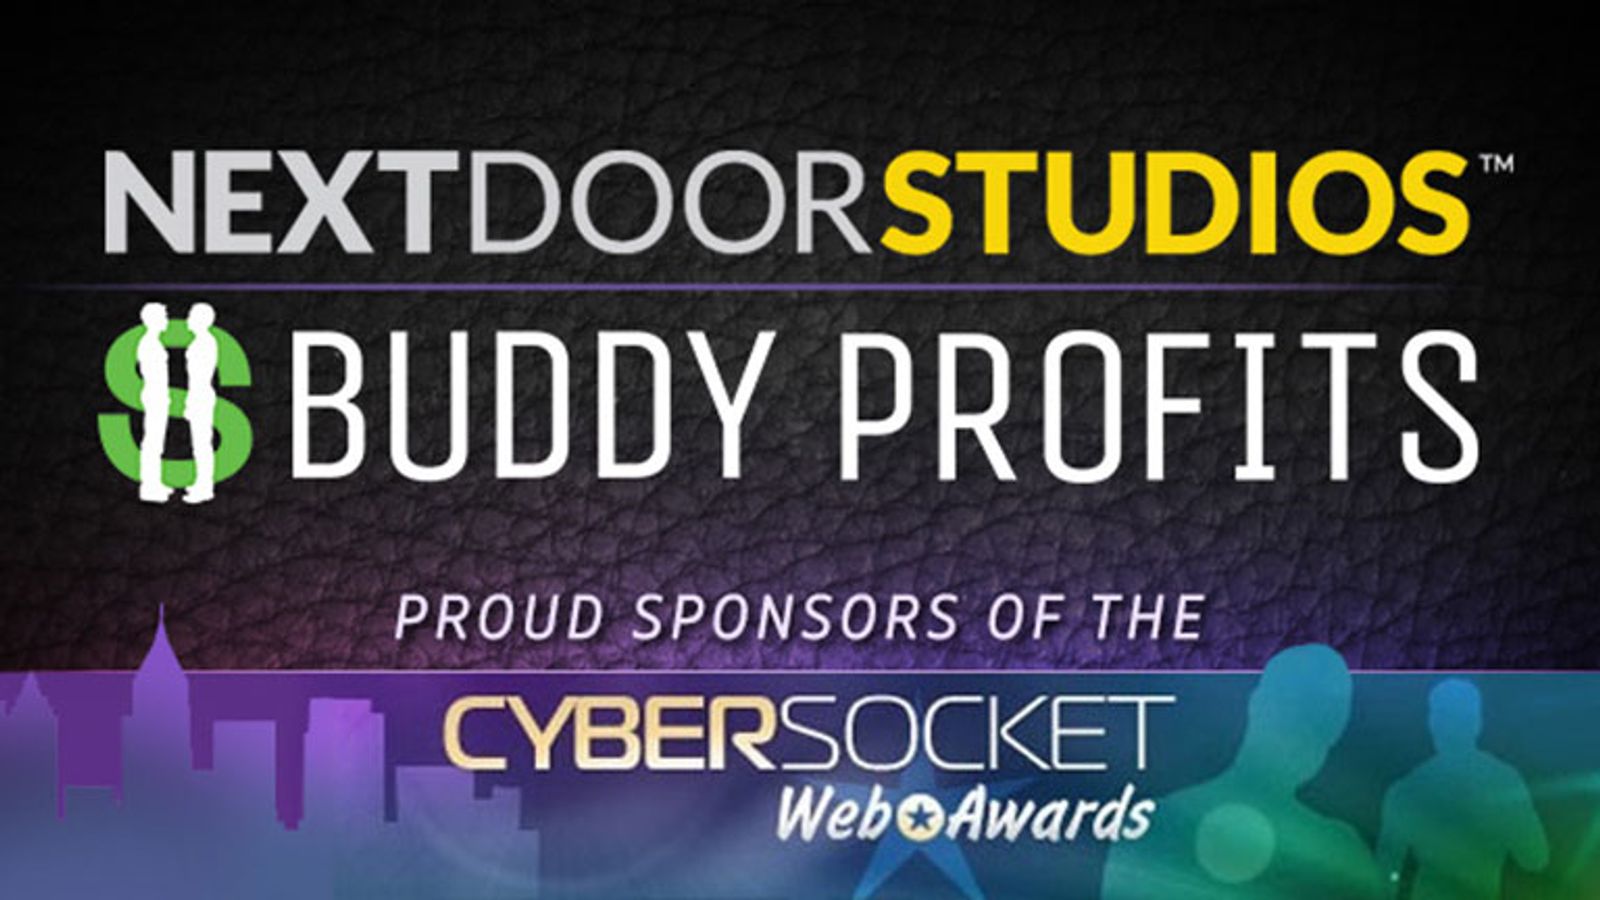 Buddy Profits and Next Door Studios Sponsor Cybersocket Awards